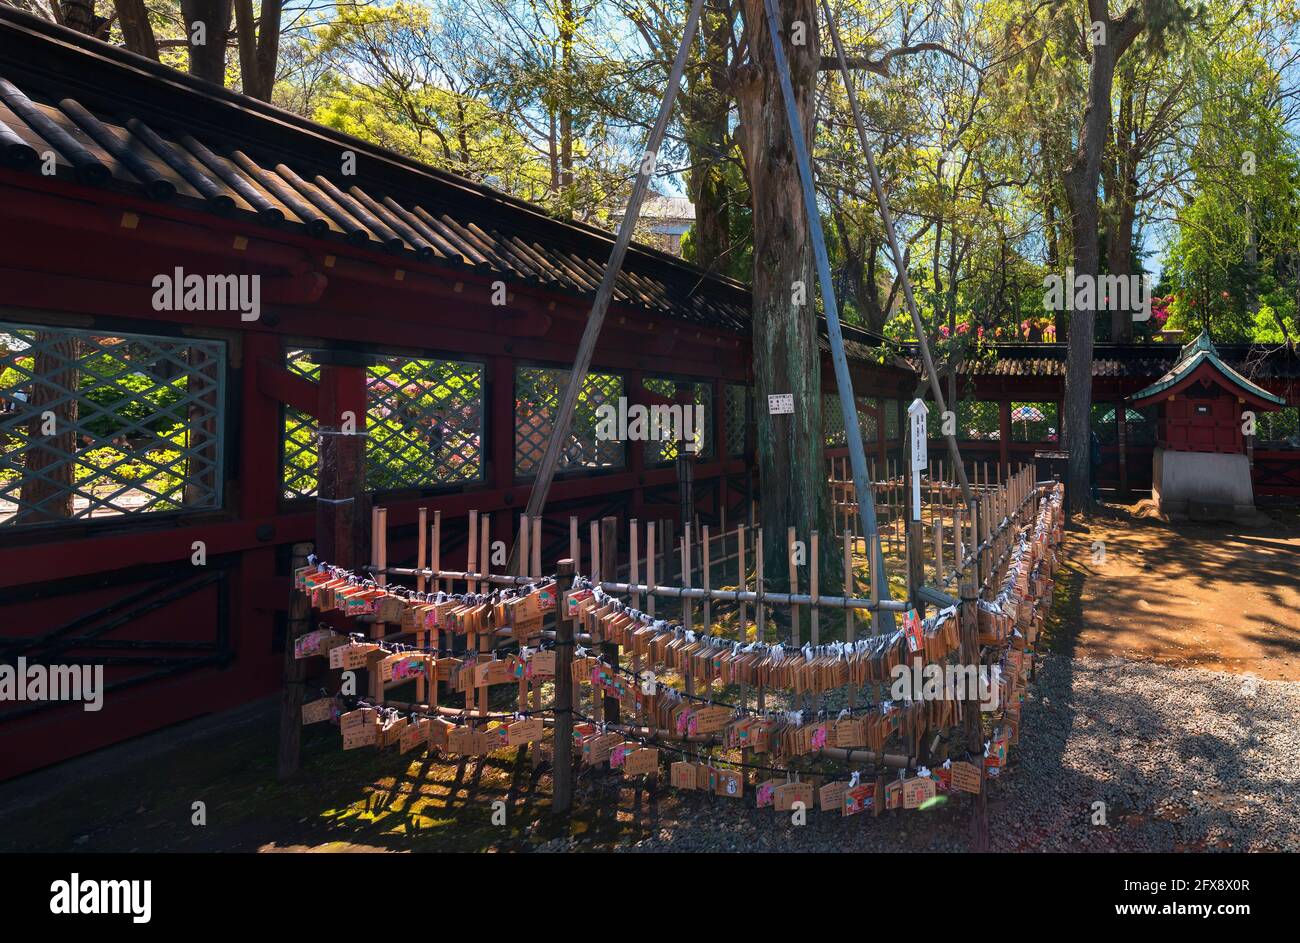 tokyo, giappone - aprile 16 2021: Vermilion sukibei recinto intorno ad un albero conifero kaya e ad una tribuna adornata con un mazzo di Shinto Ema appeso plaqués votivo Foto Stock